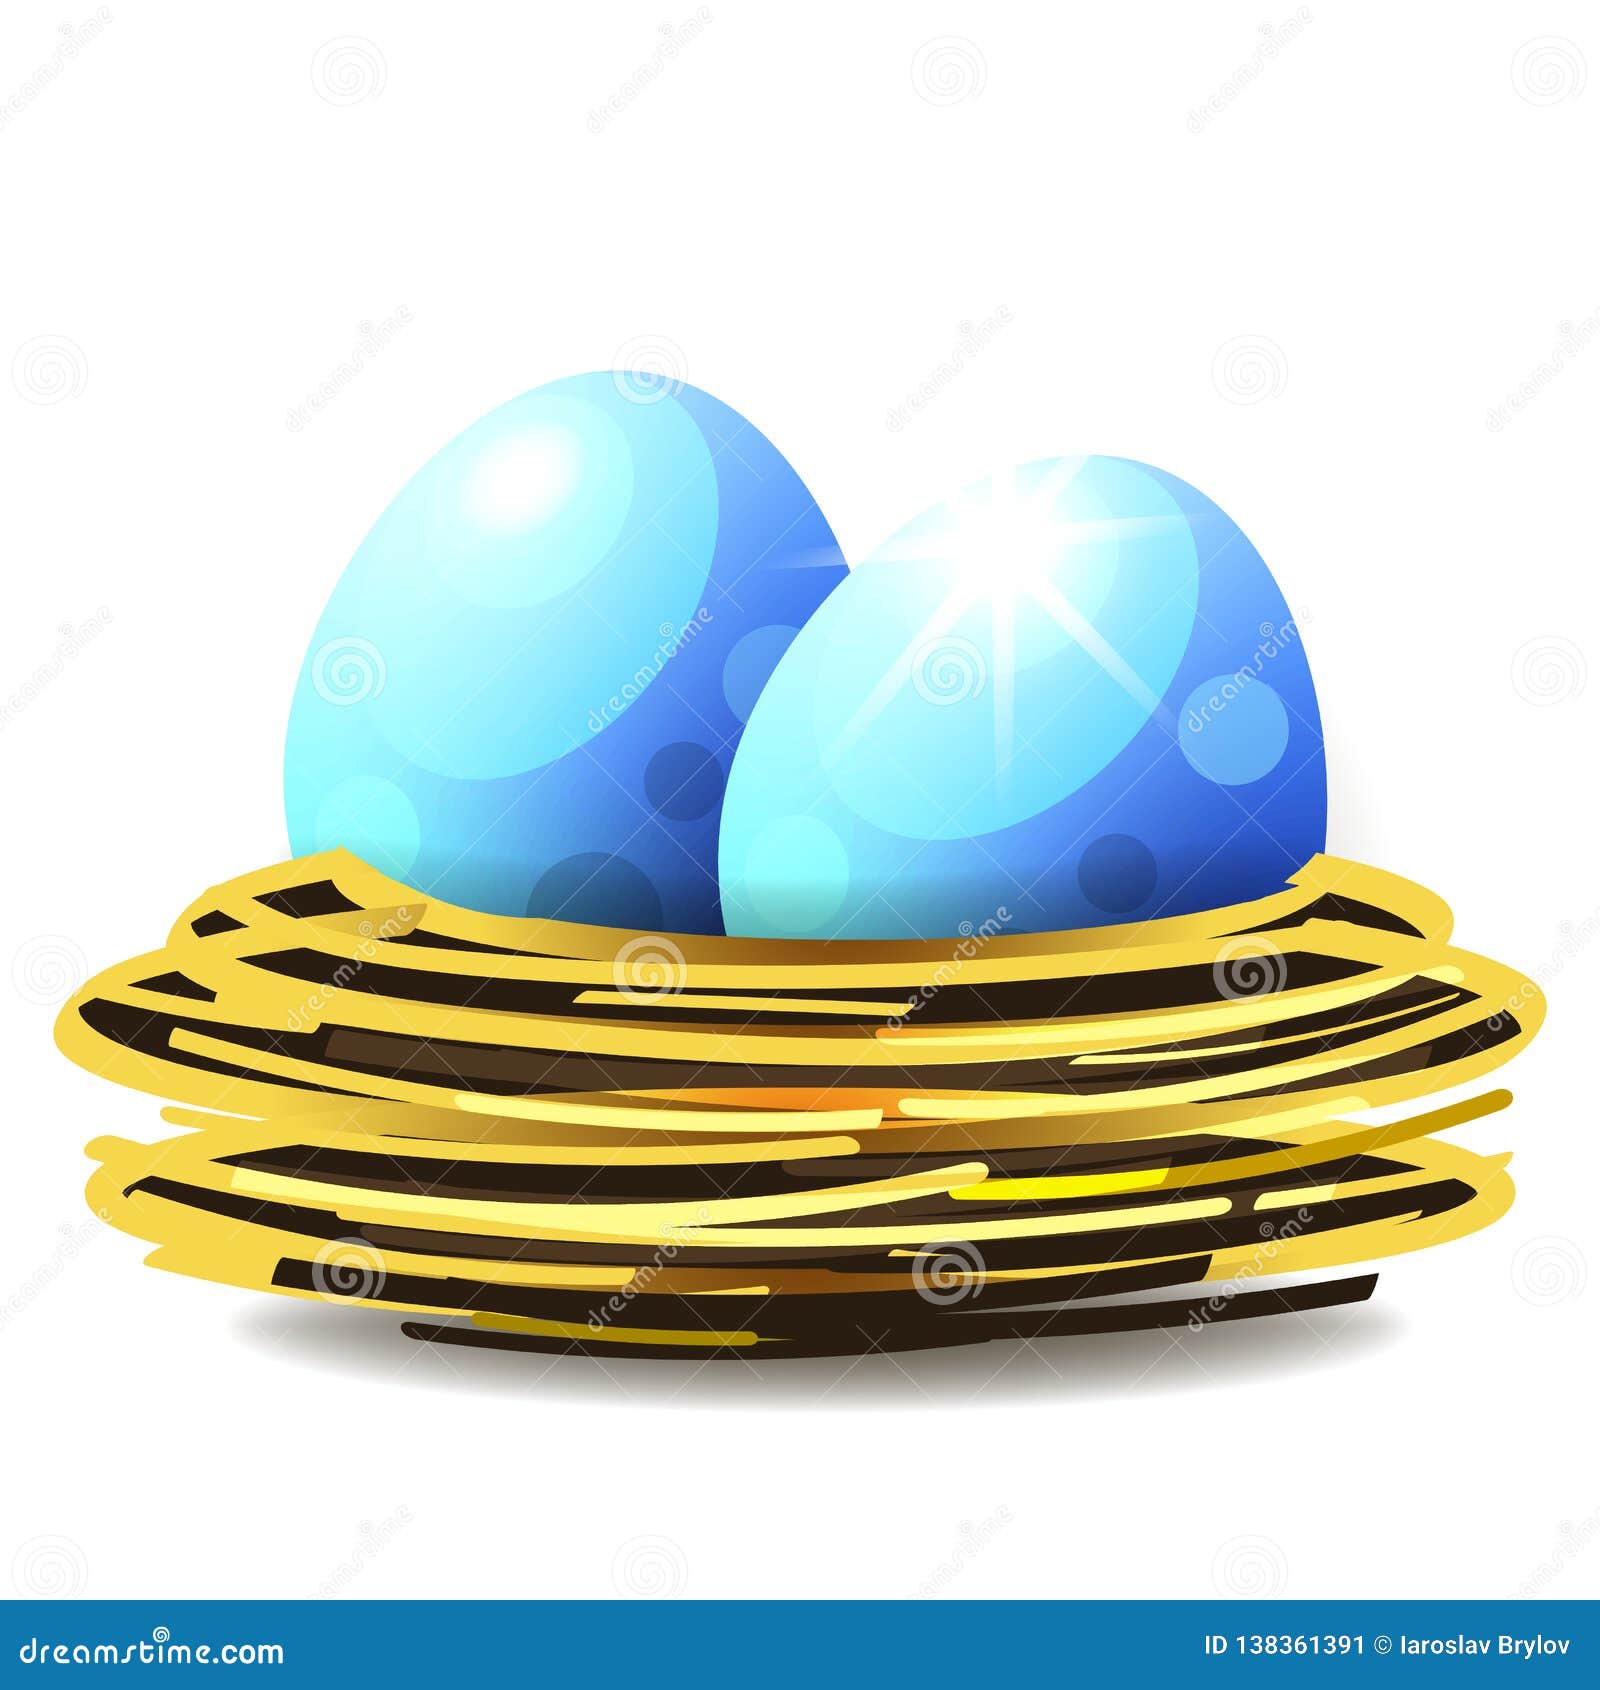 Nest Logo, Vector Of Bird S Nest And Eggs Stock Vector - Illustration